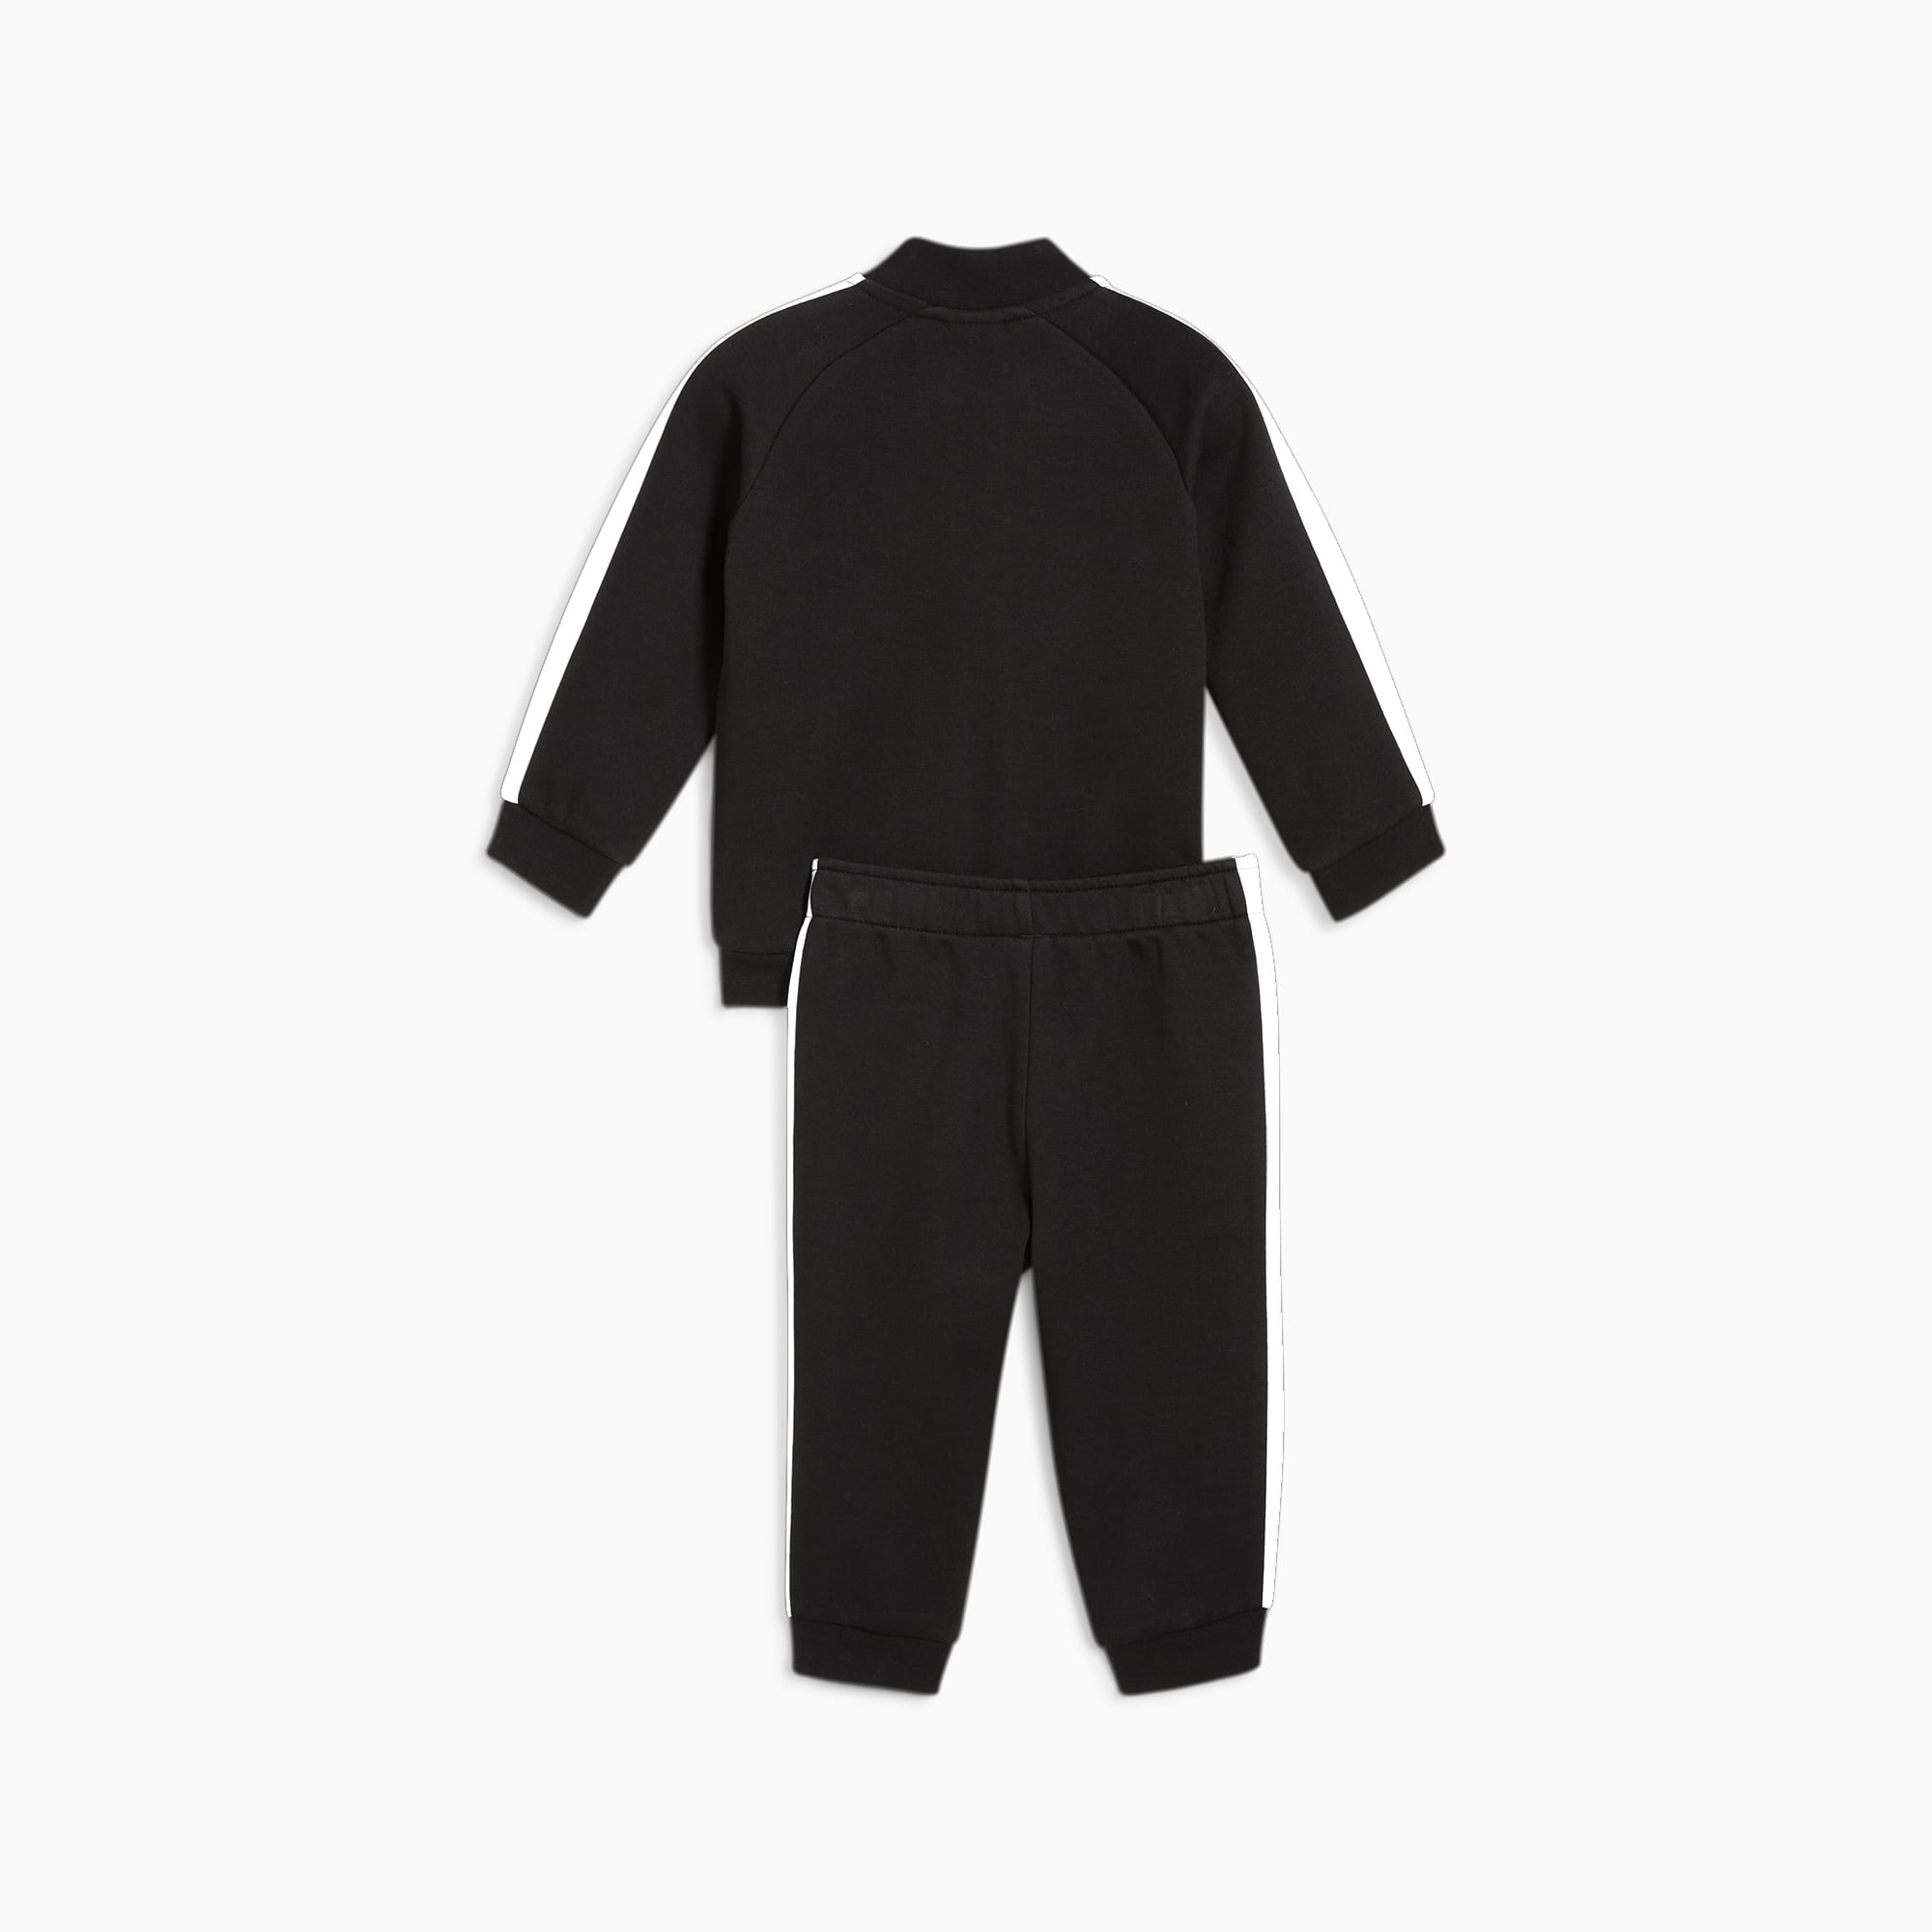 PUMA MINICATS T7 ICONIC Trainingsanzug Baby Für Kinder, Schwarz, Größe: 92, Kleidung